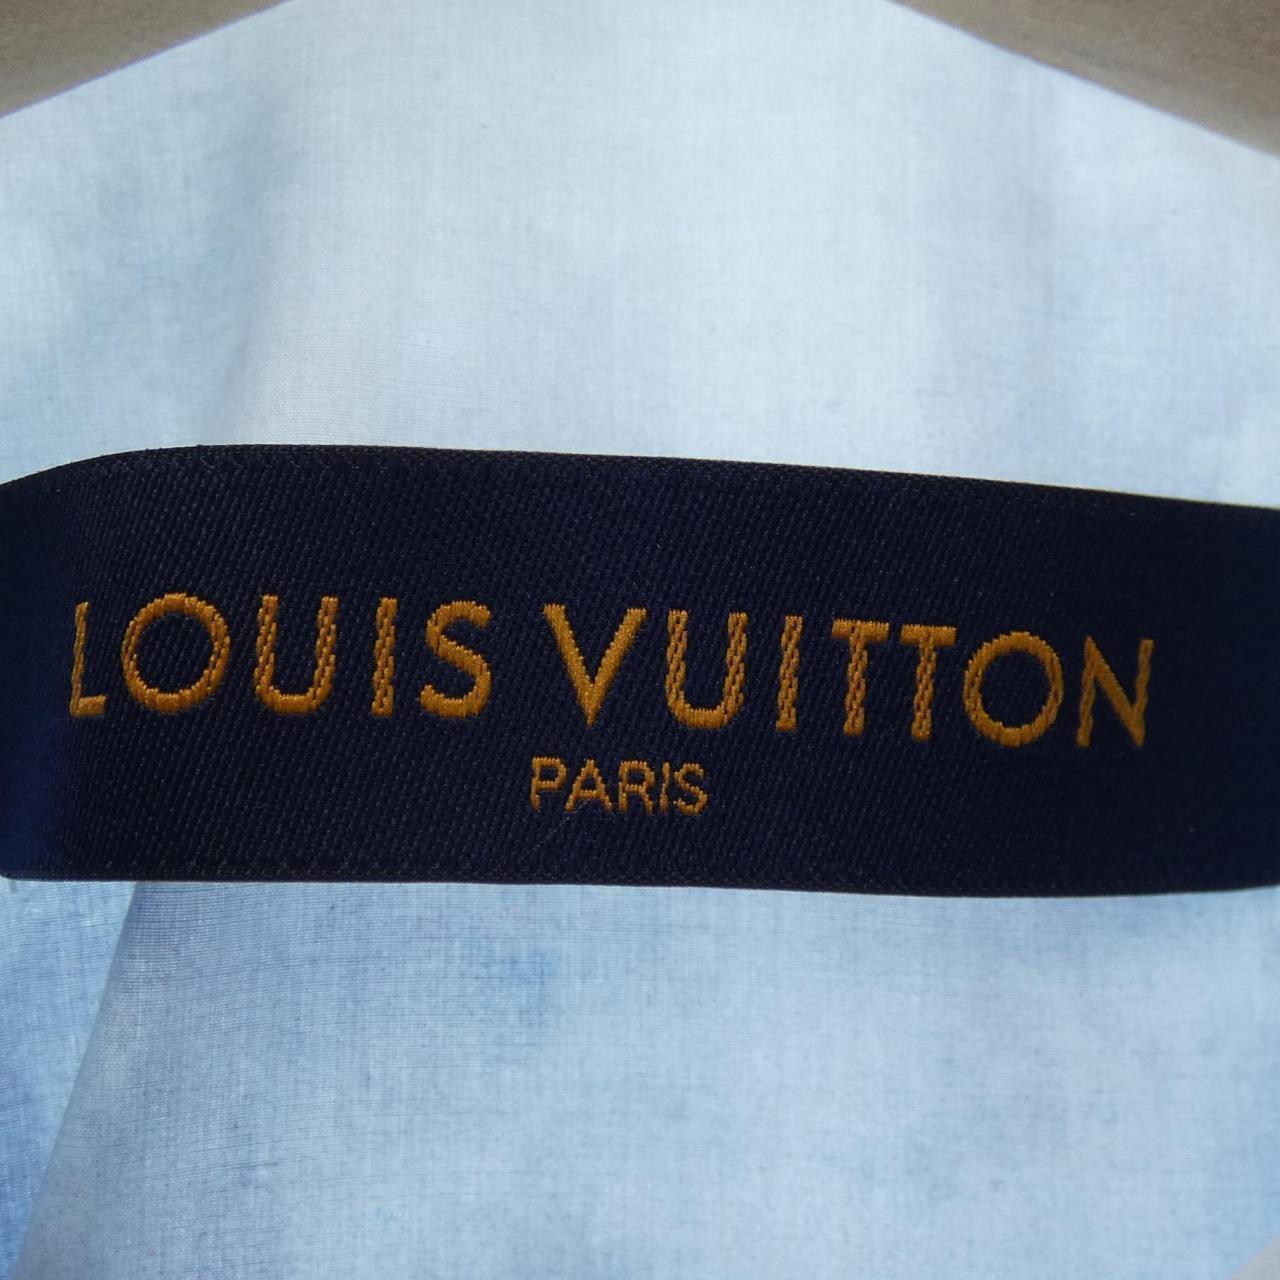 Authentic LOUIS VUITTON Tshirt #241-003-252-5415